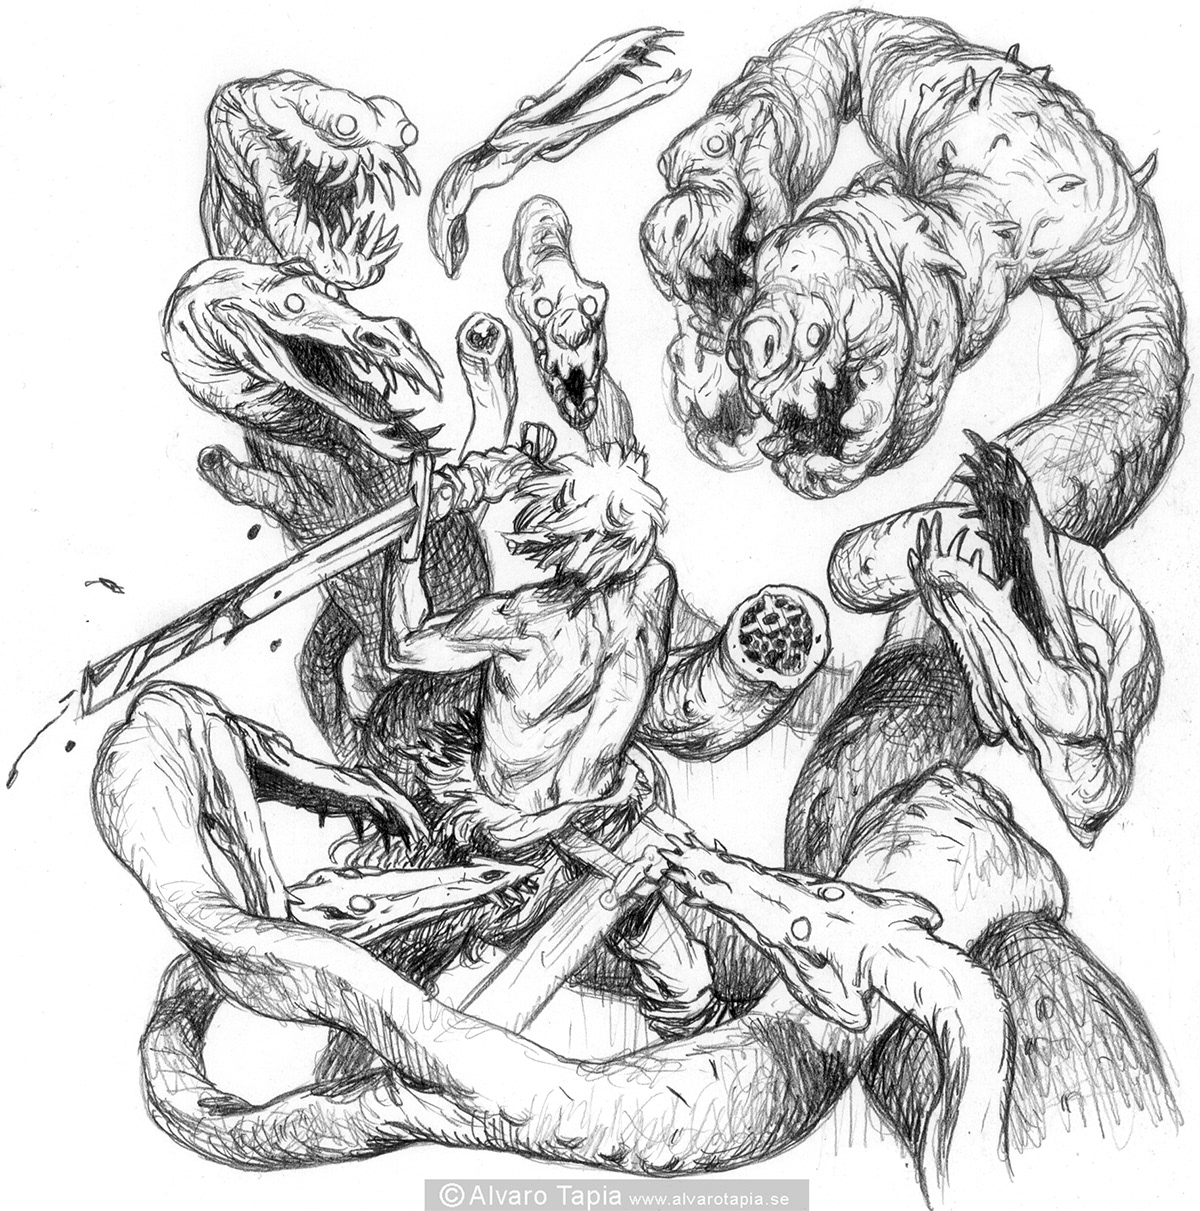 dragons mythology rpg fantasy harru potter fairlytale folktale bookillustration